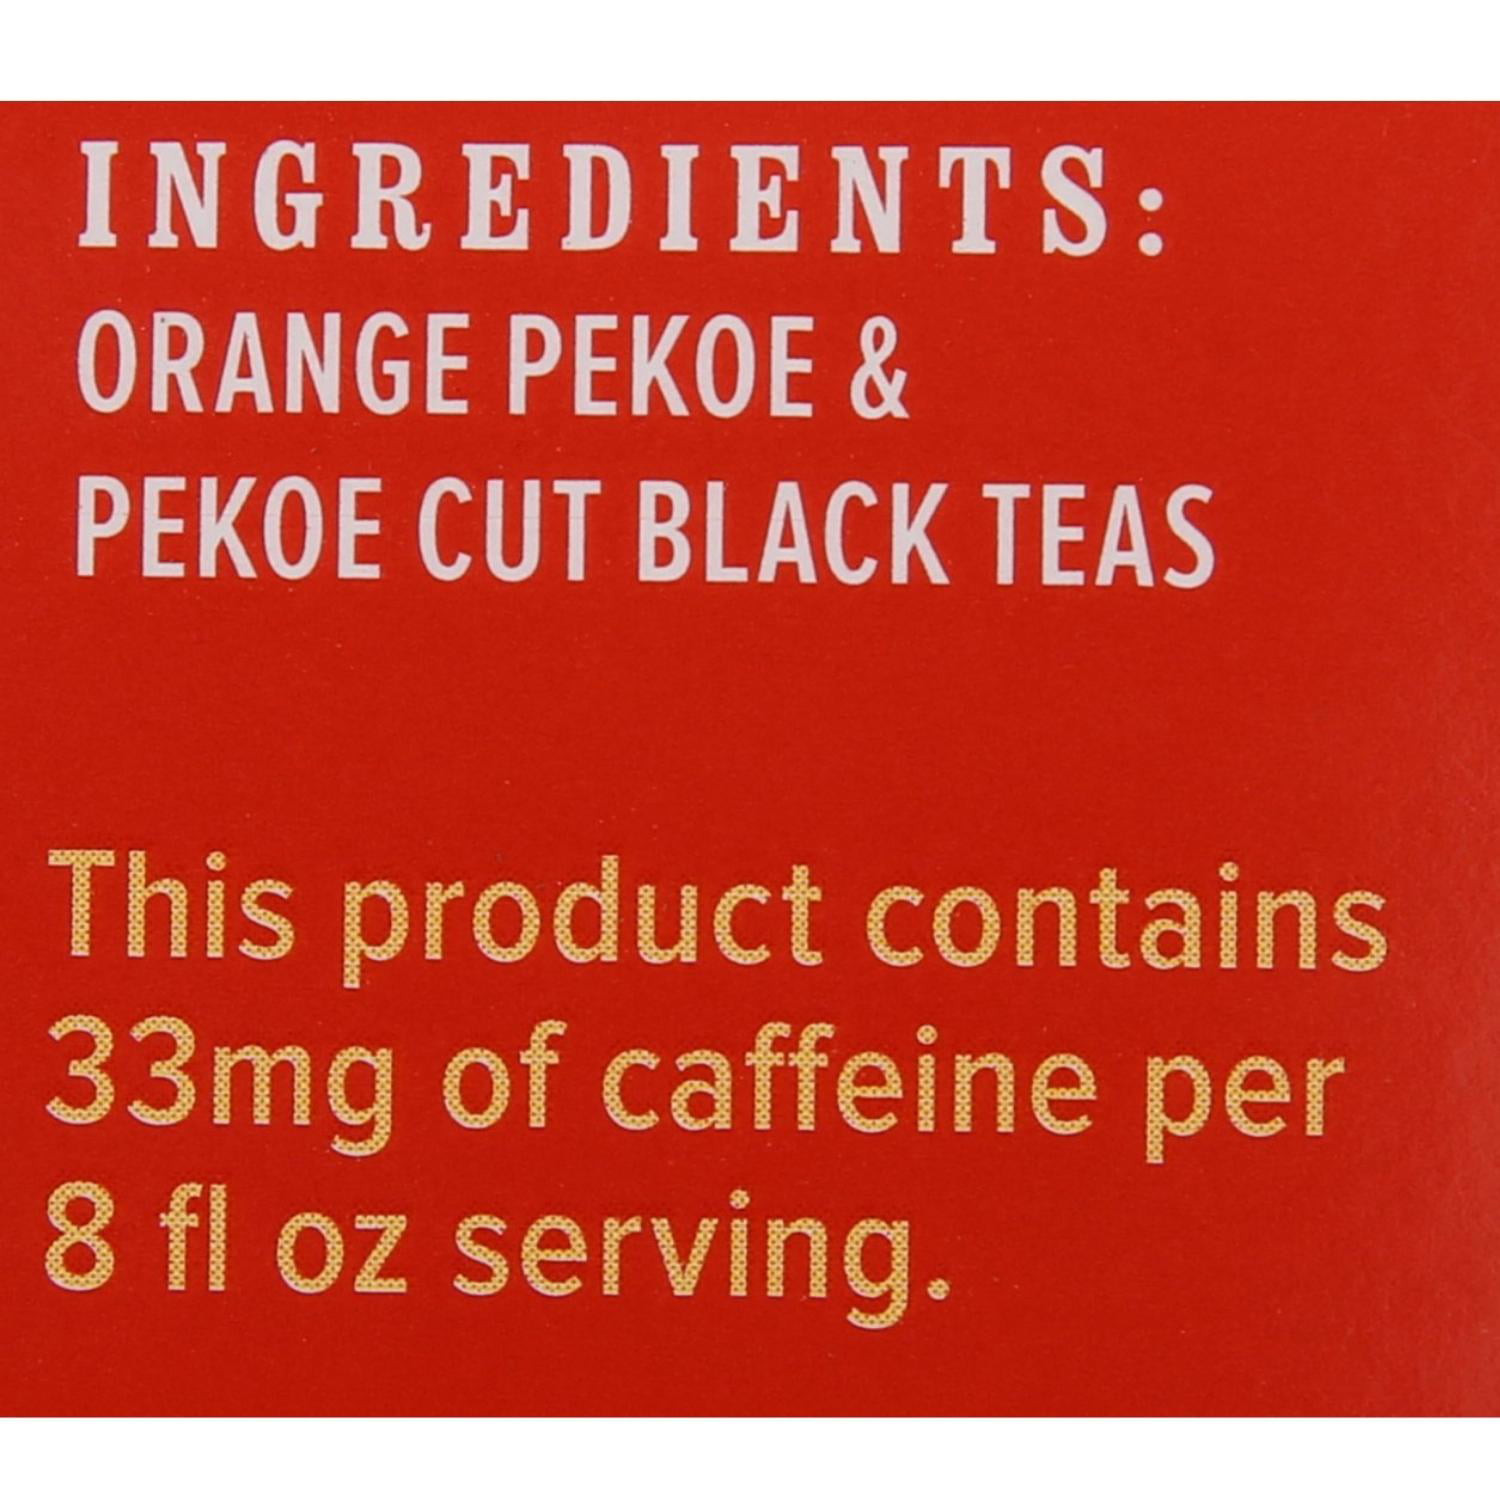 Luzianne 1 oz - Gallon Tea Bags (24 Count) - 4790030359